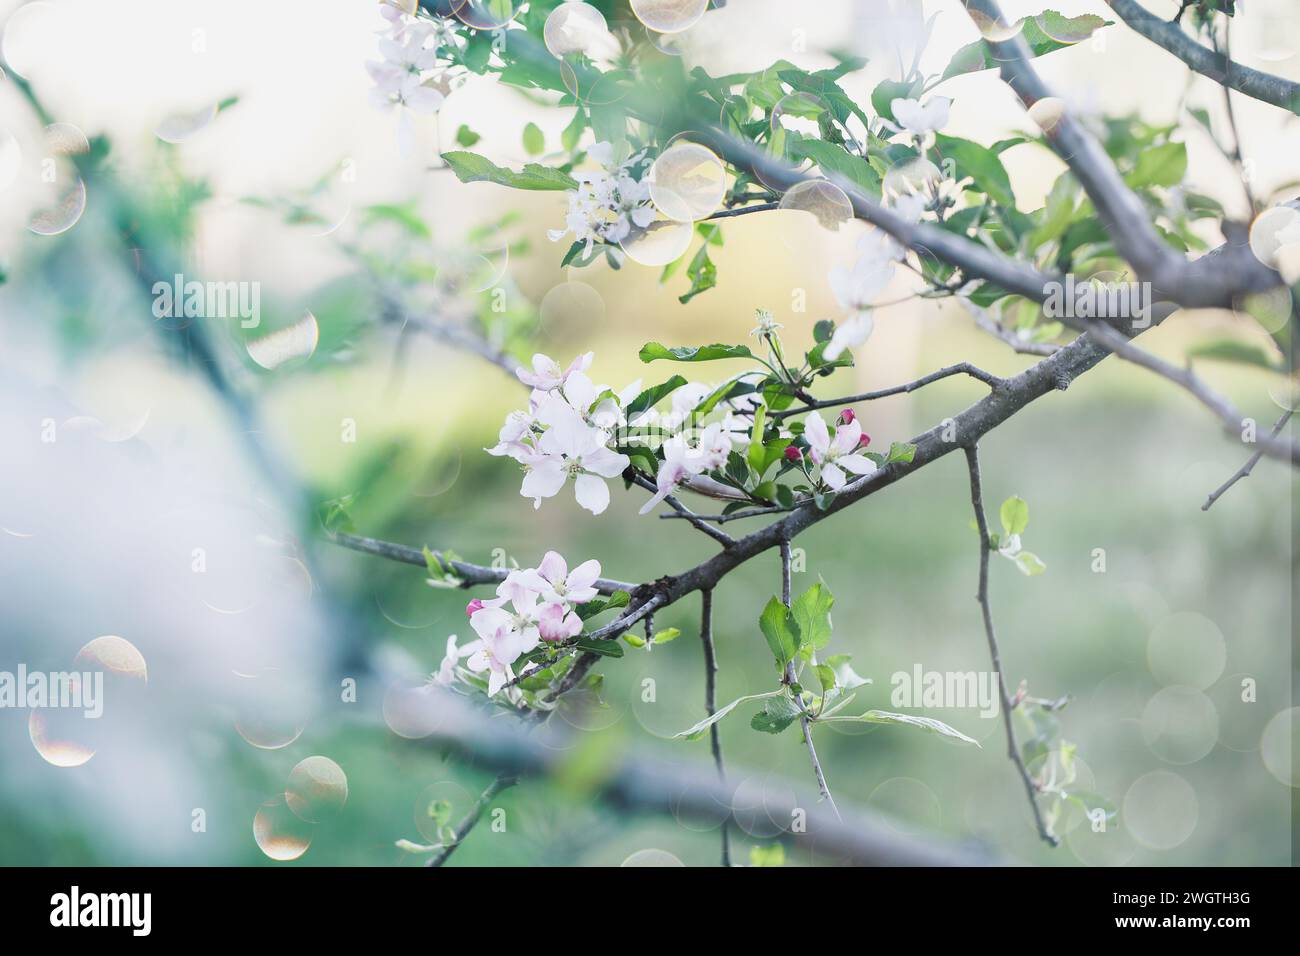 Scène fantaisiste de fleurs de pommiers roses et blanches. Mise au point sélective avec arrière-plan flou. Banque D'Images